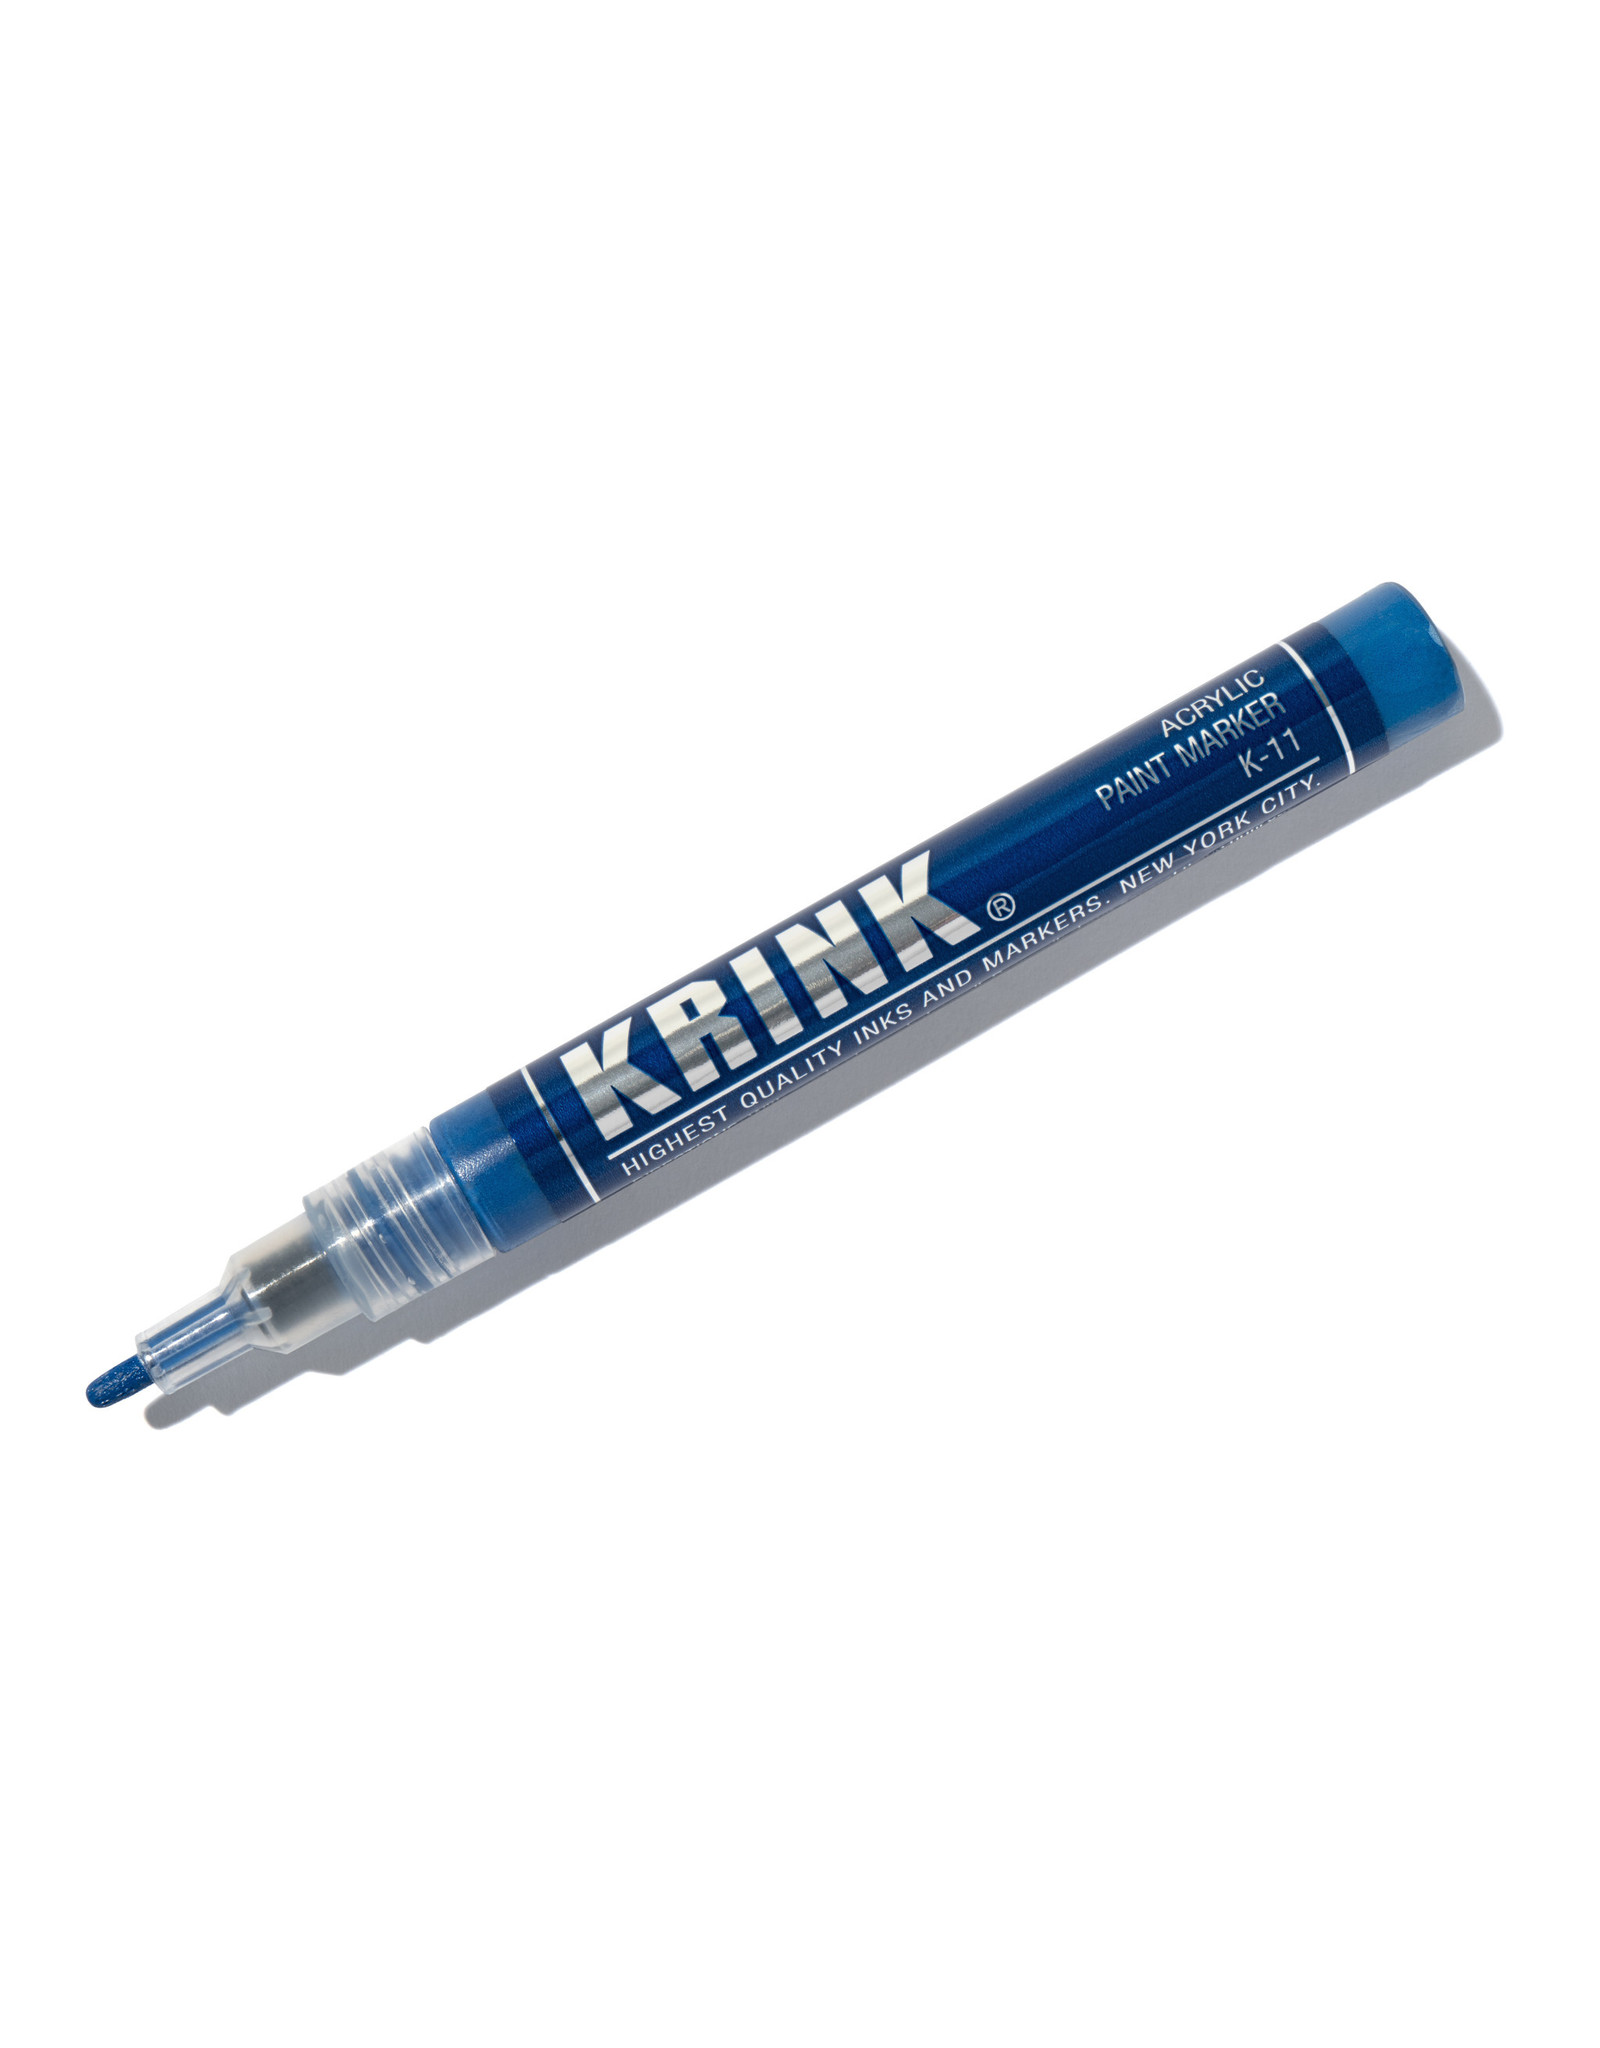 Krink Krink K-11 Acrylic Paint Marker, Blue